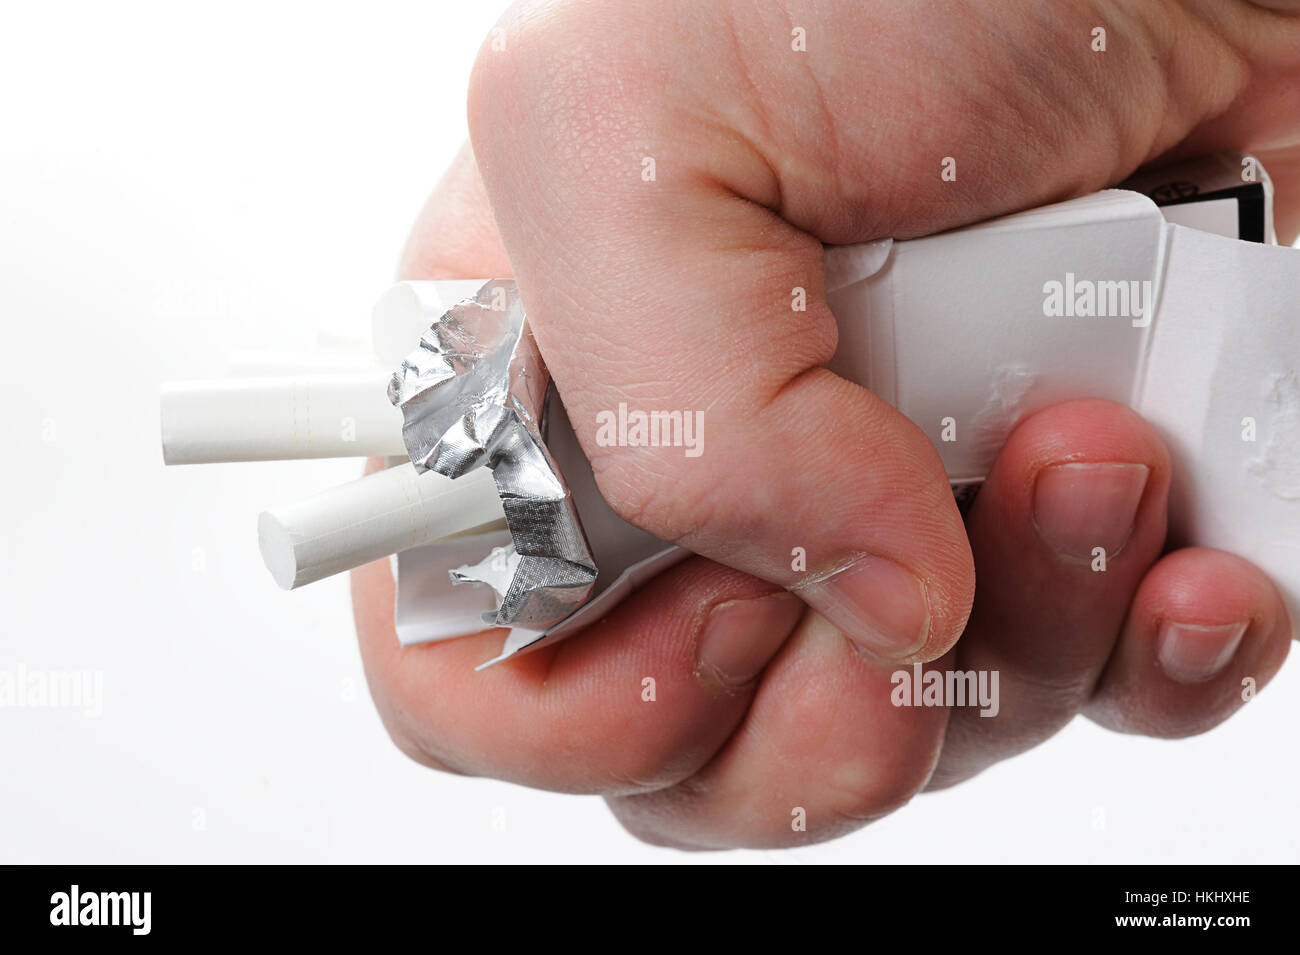 Schiacciare pacchetto di sigarette con pugno isolato su bianco Foto Stock